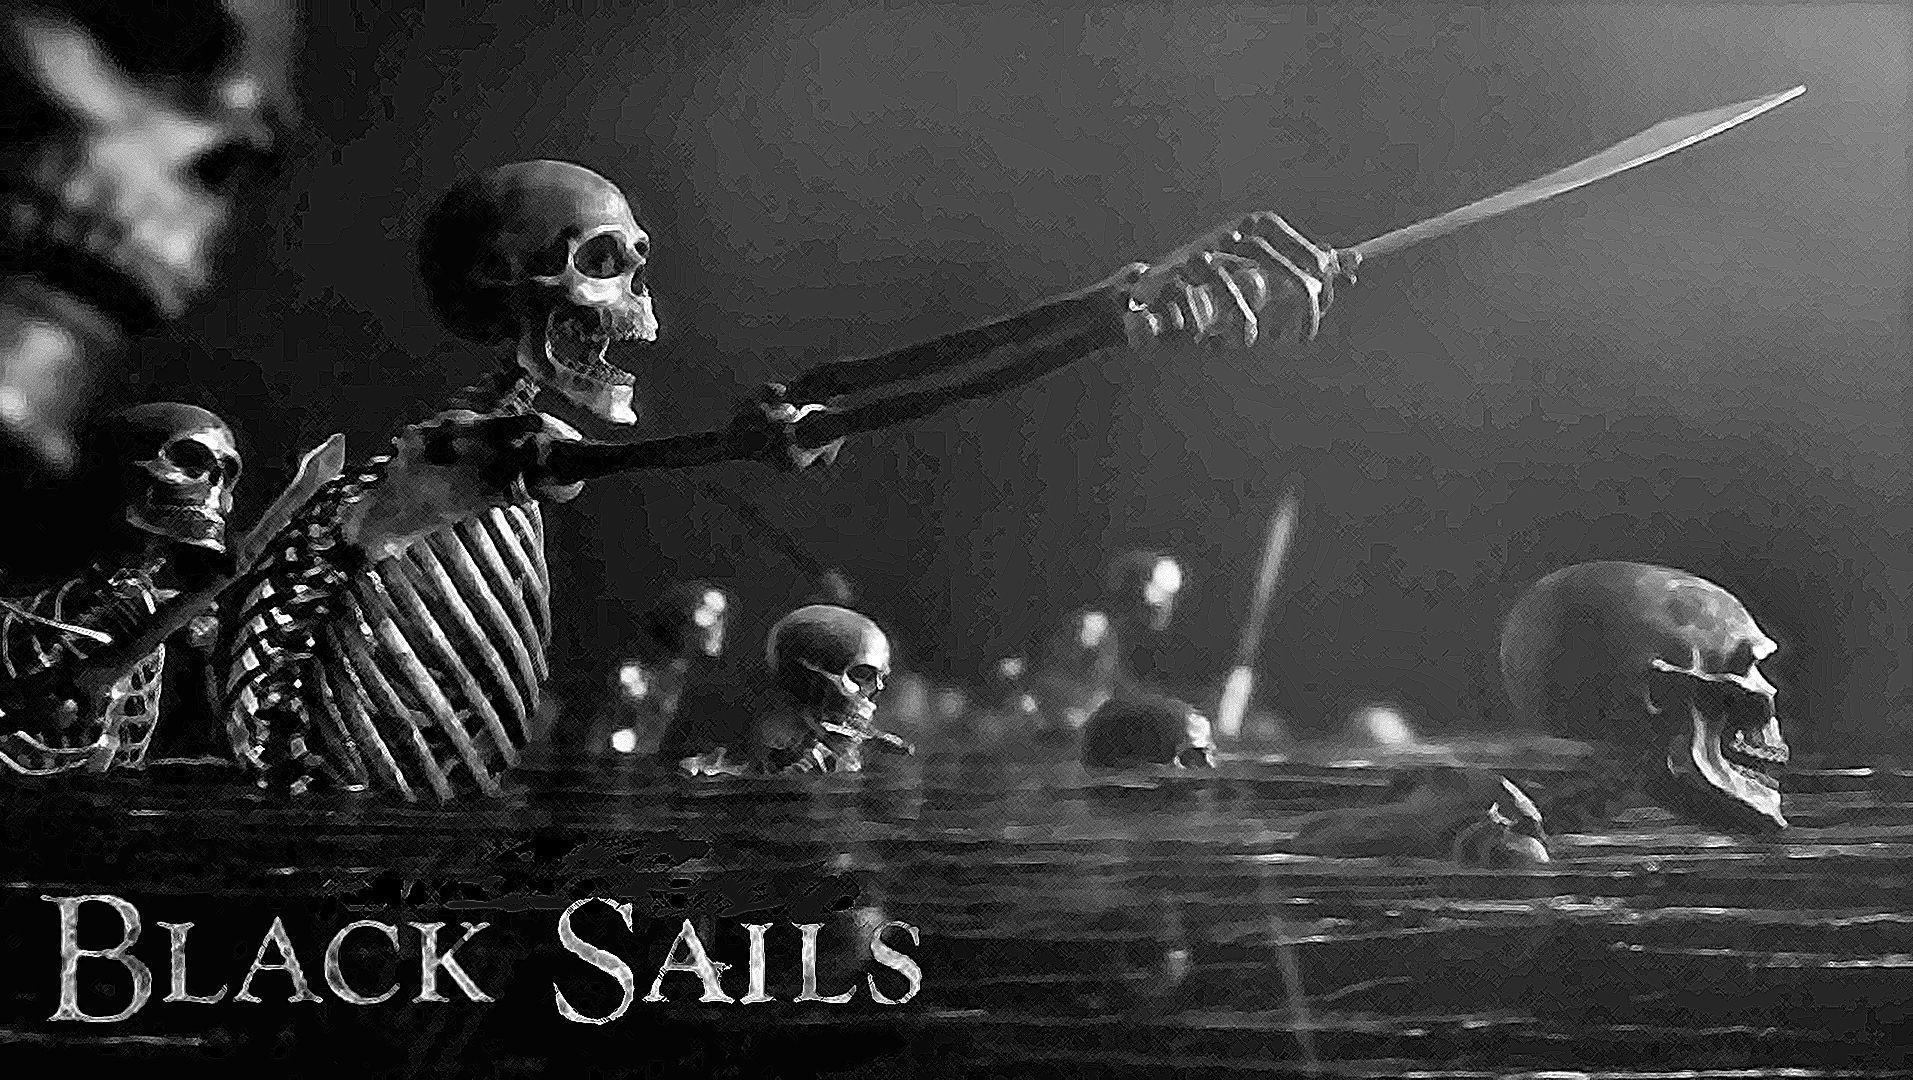 Black Sails Wallpaper - Black Sails 4k , HD Wallpaper & Backgrounds